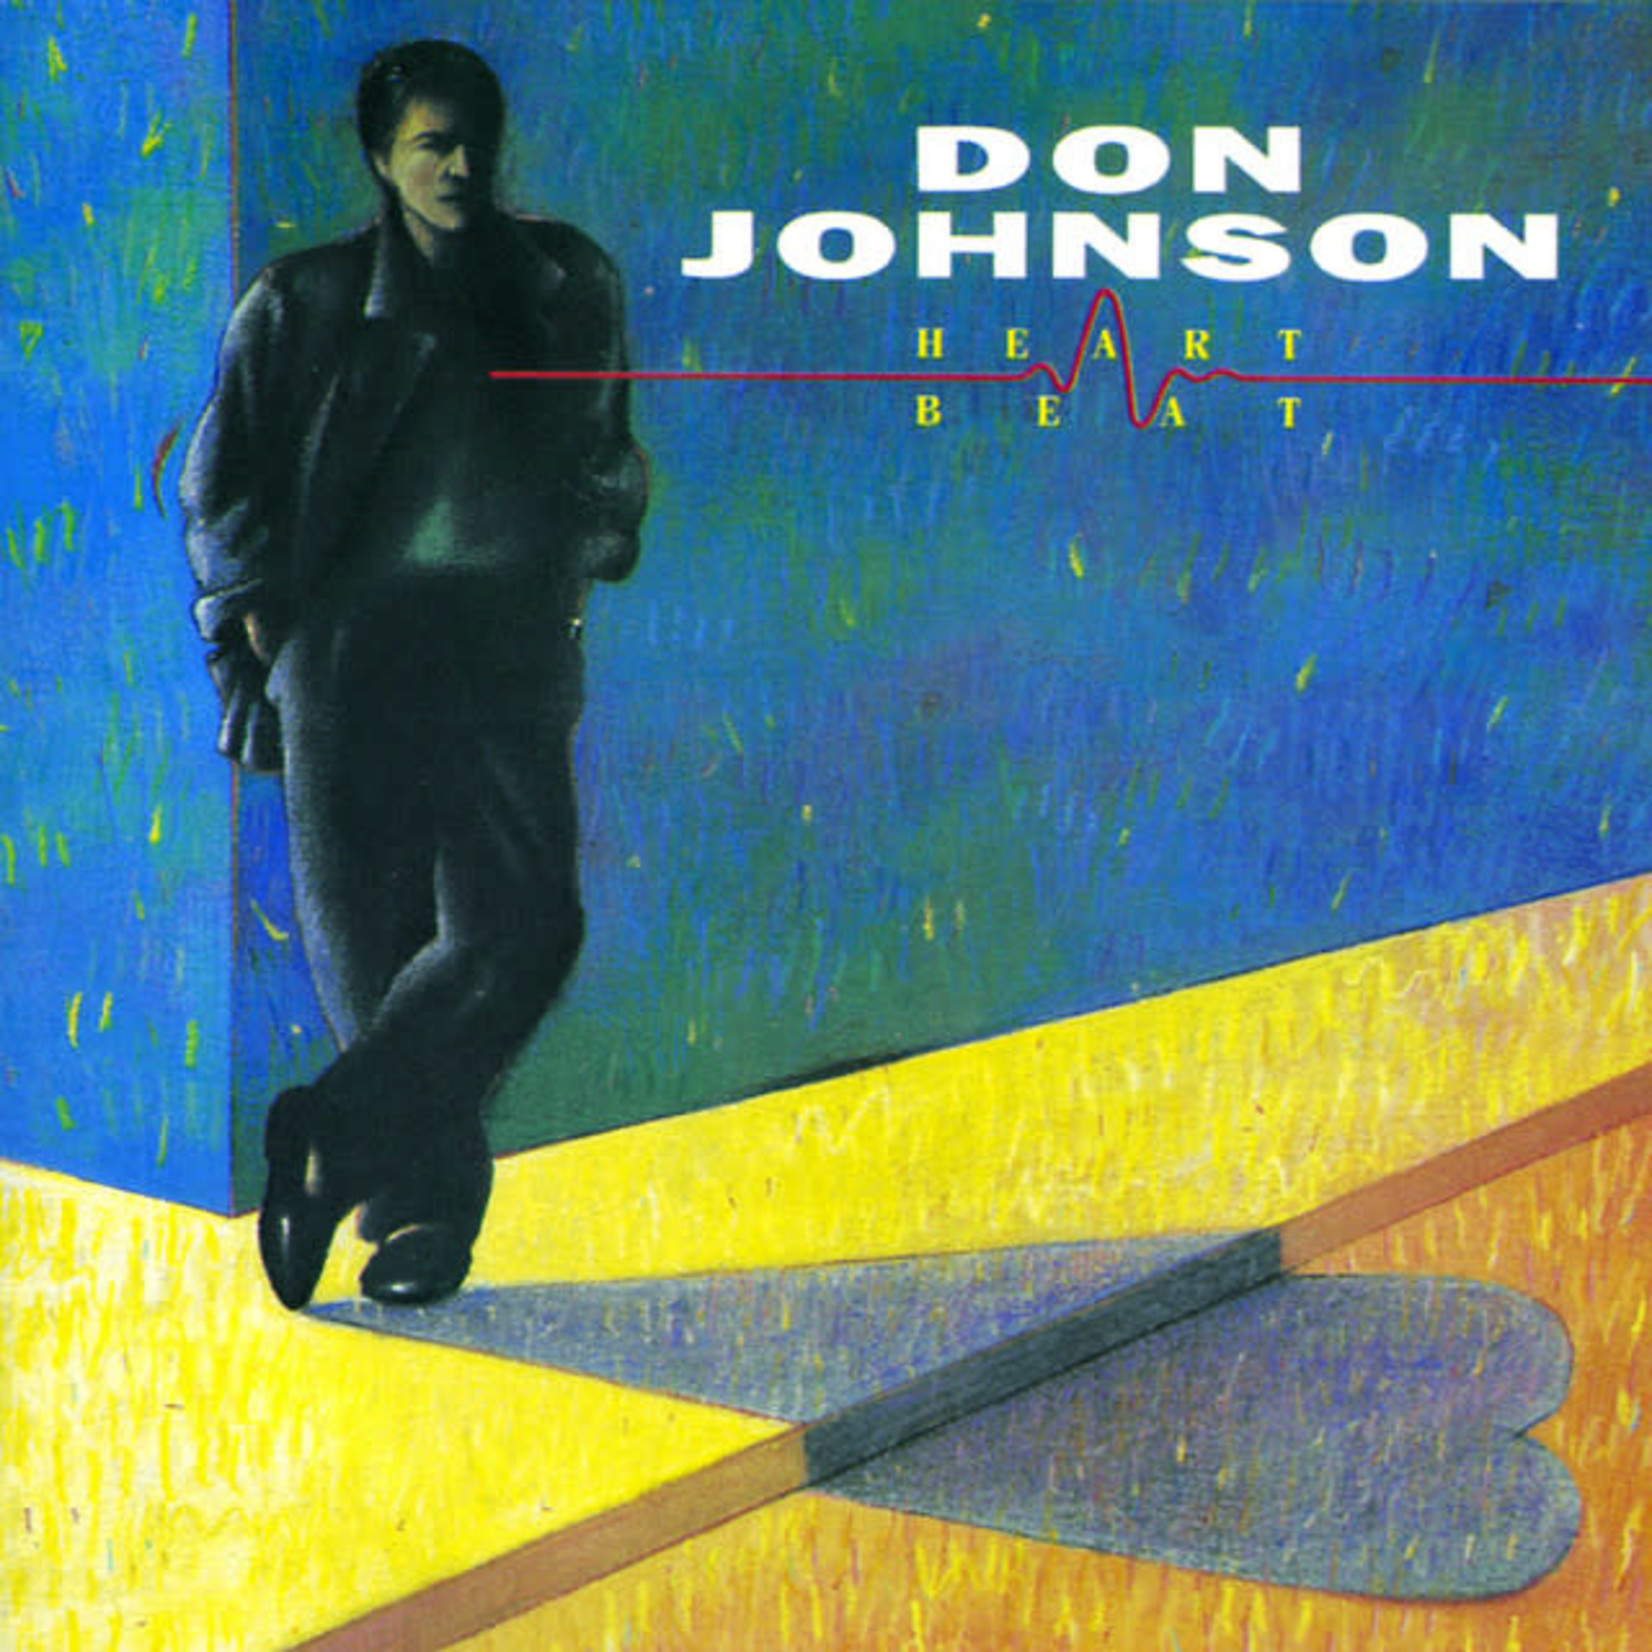 [Vintage] Don Johnson - Heart Beat